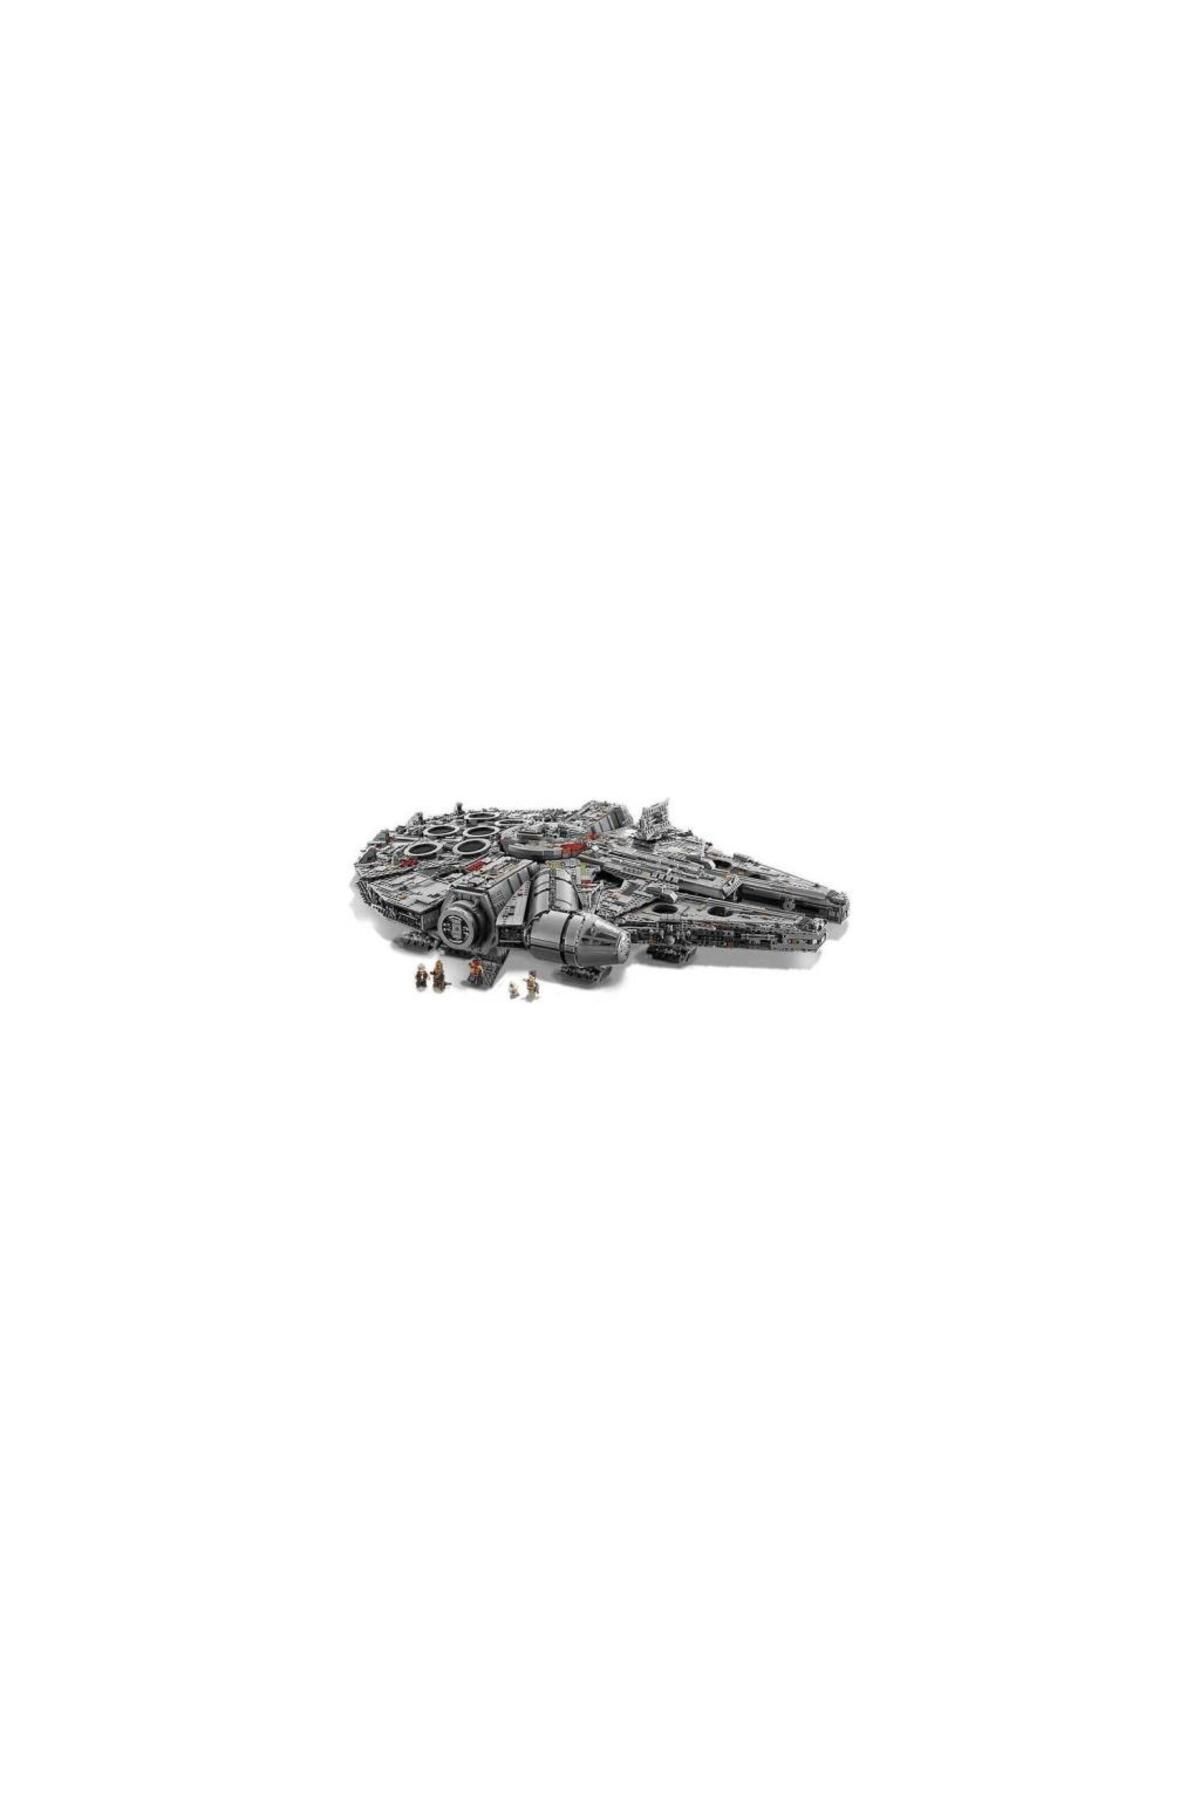 LEGO لگو سری کلکسیونر نهایی جنگ ستارگان 75192 هزاره شاهین